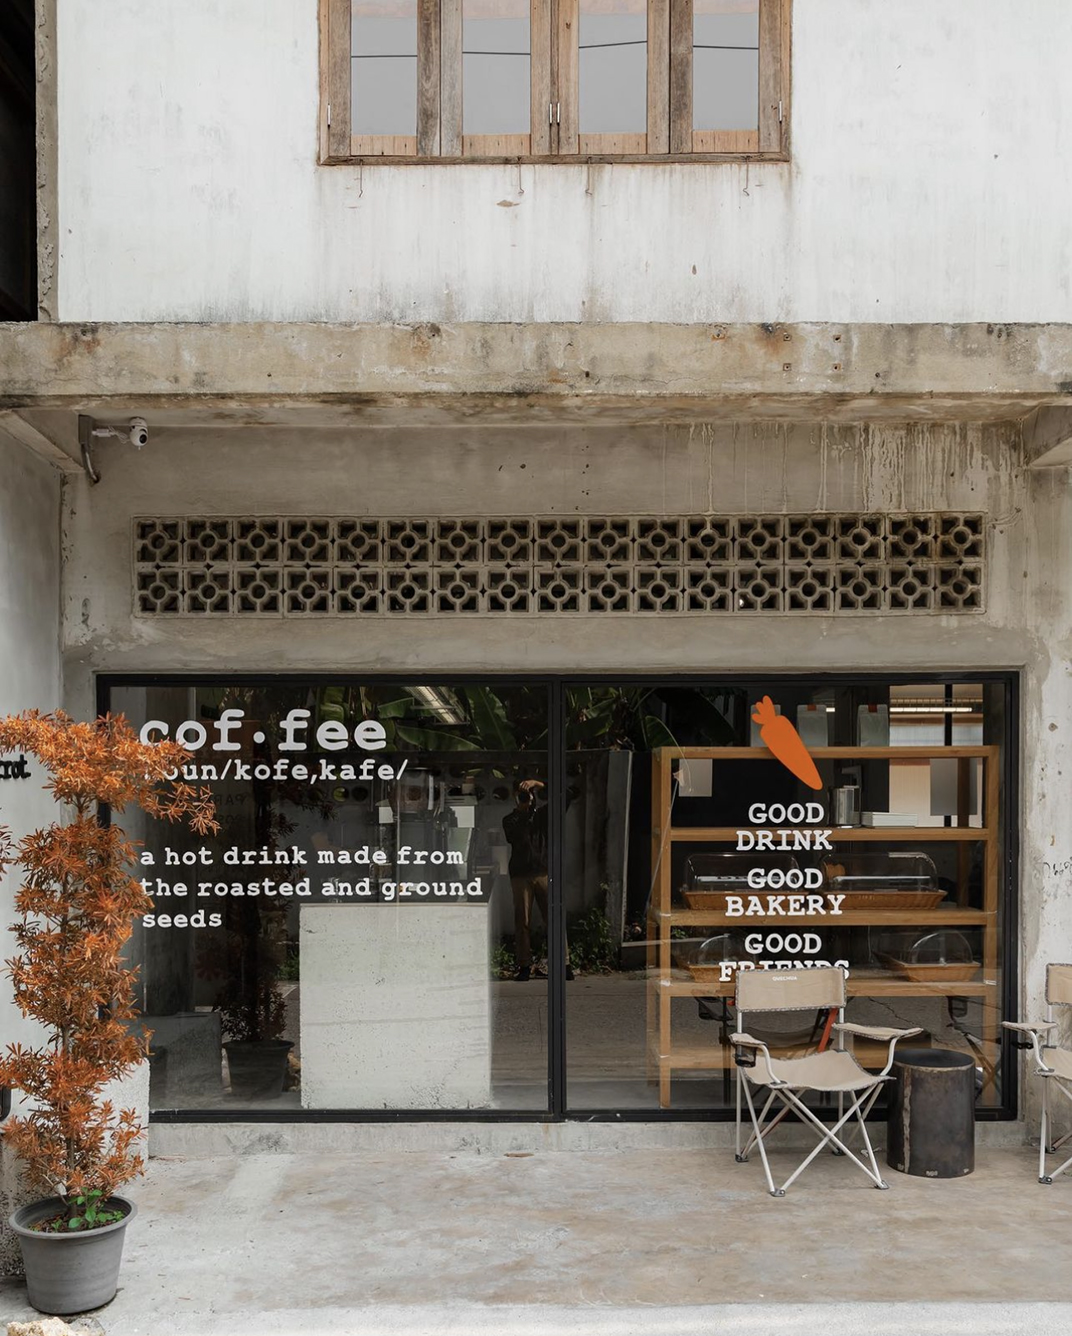 旧房改造高级优雅的咖啡空间 泰国 清迈 深圳 北京 上海 广州 武汉 餐饮商业空间 logo设计 vi设计 空间设计